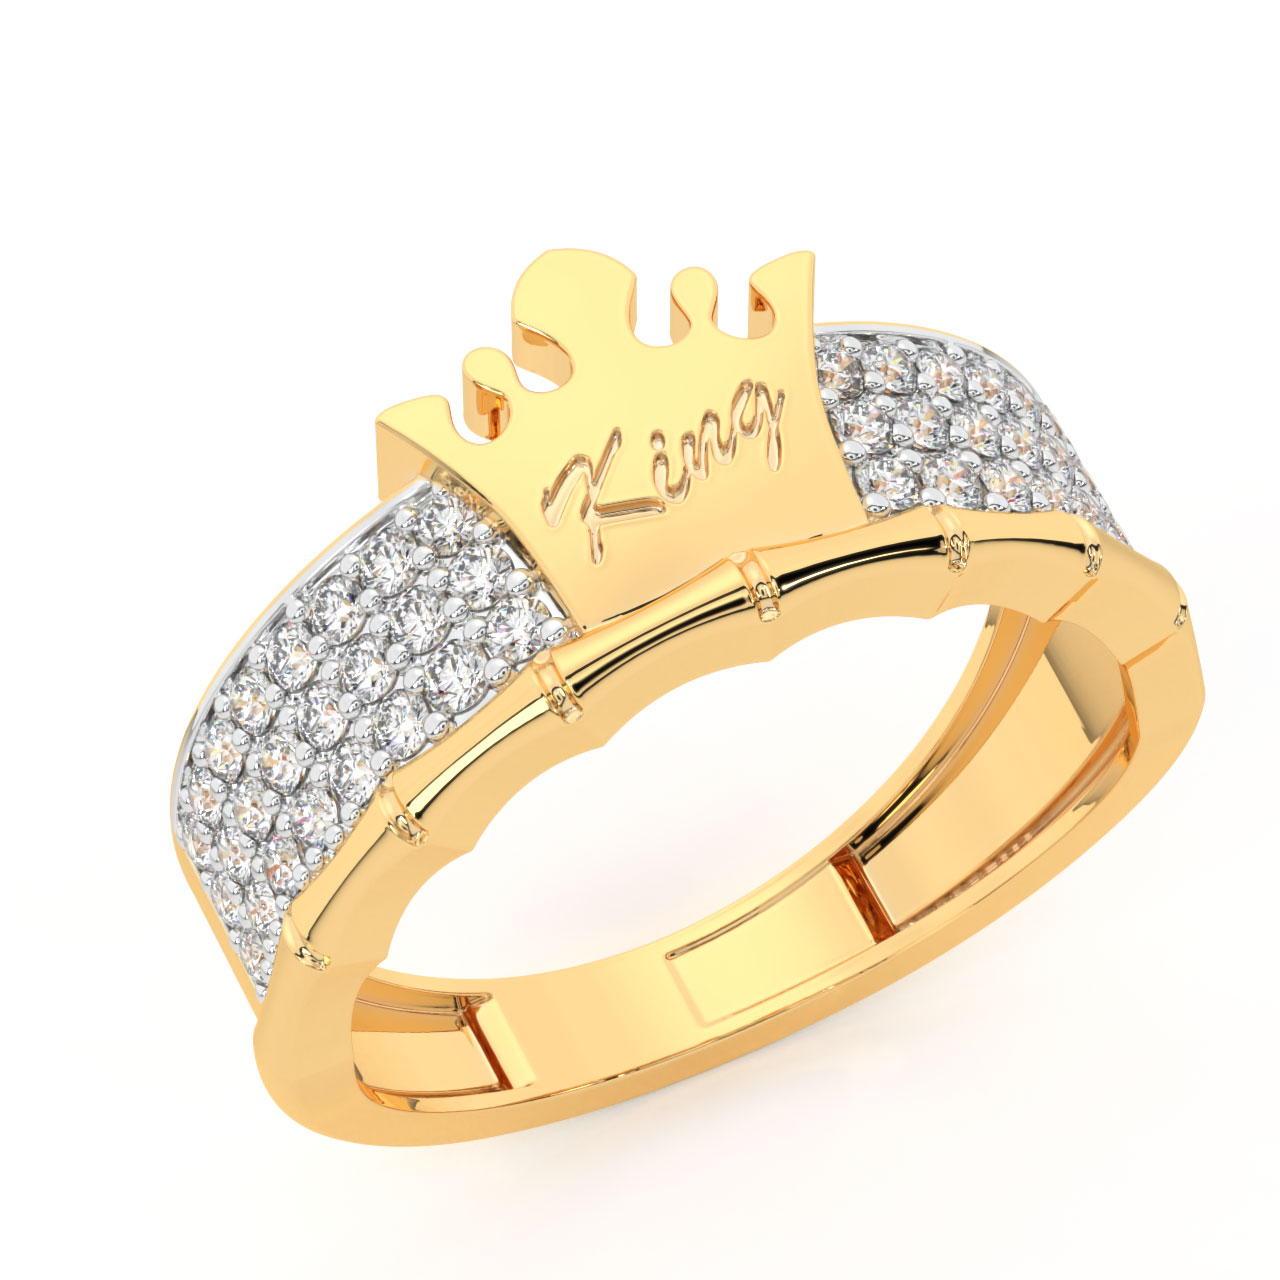 14K Yellow Gold Diamond Men's Ring| 0.25 CT TDW| 5.60 Grams| Size 10